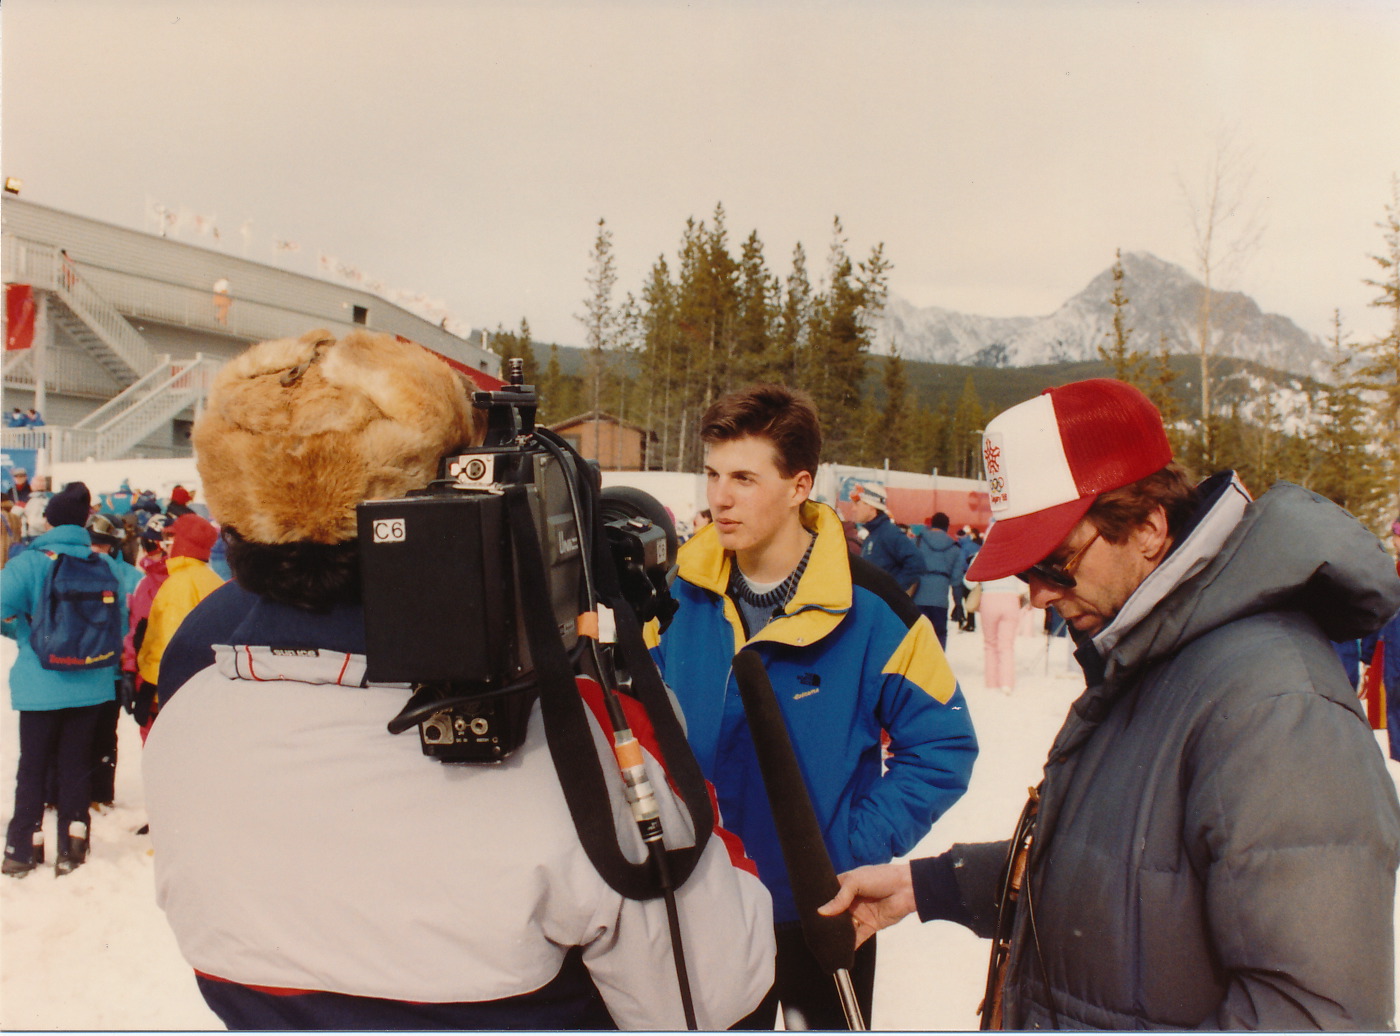 Jeff at the Calgary Winter Olympics